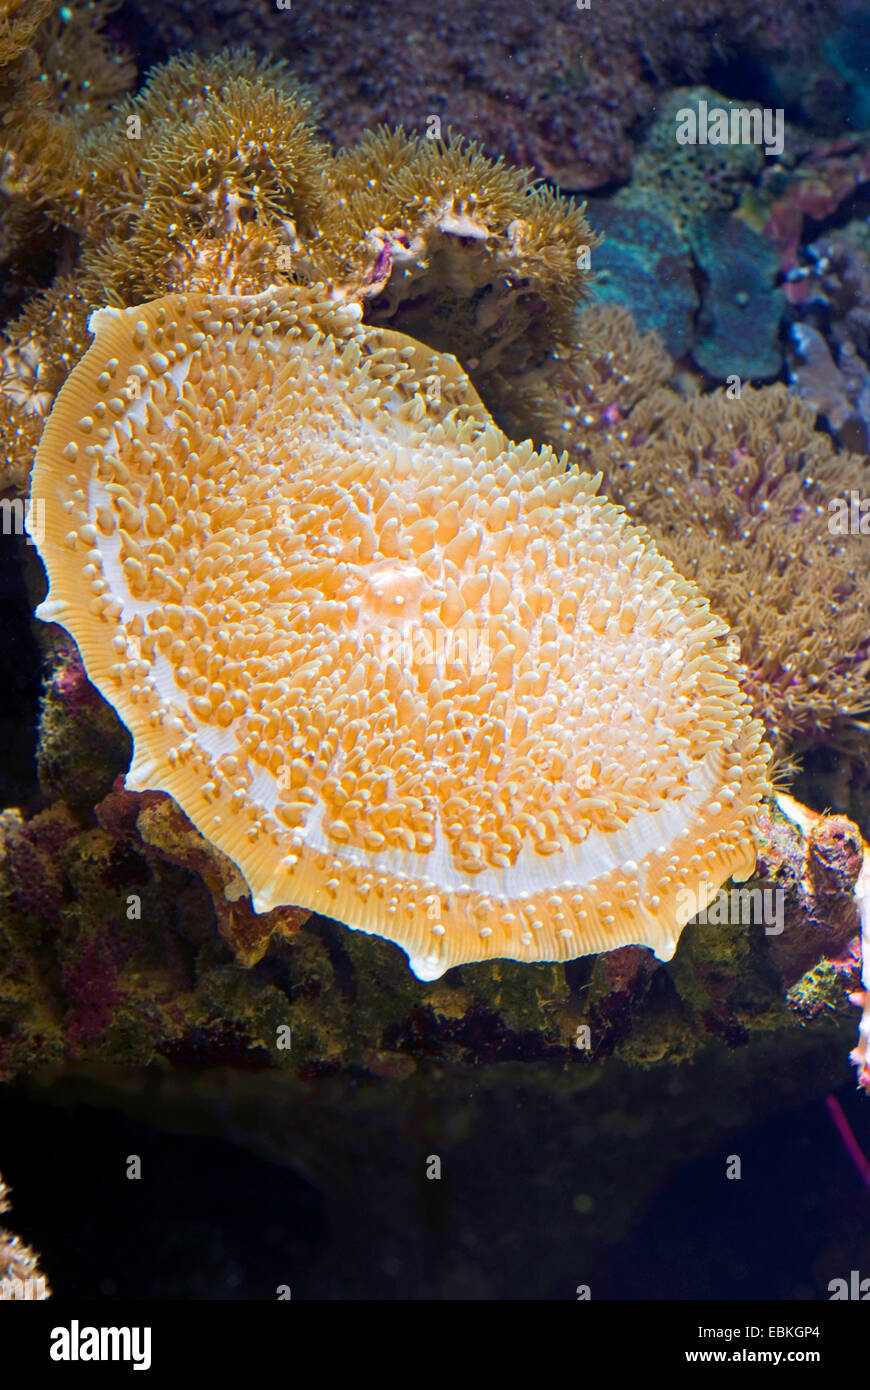 Tasse géante, oreilles d'éléphant géantes (Amplexidiscus fenestrafer corail champignon), close-up view Banque D'Images